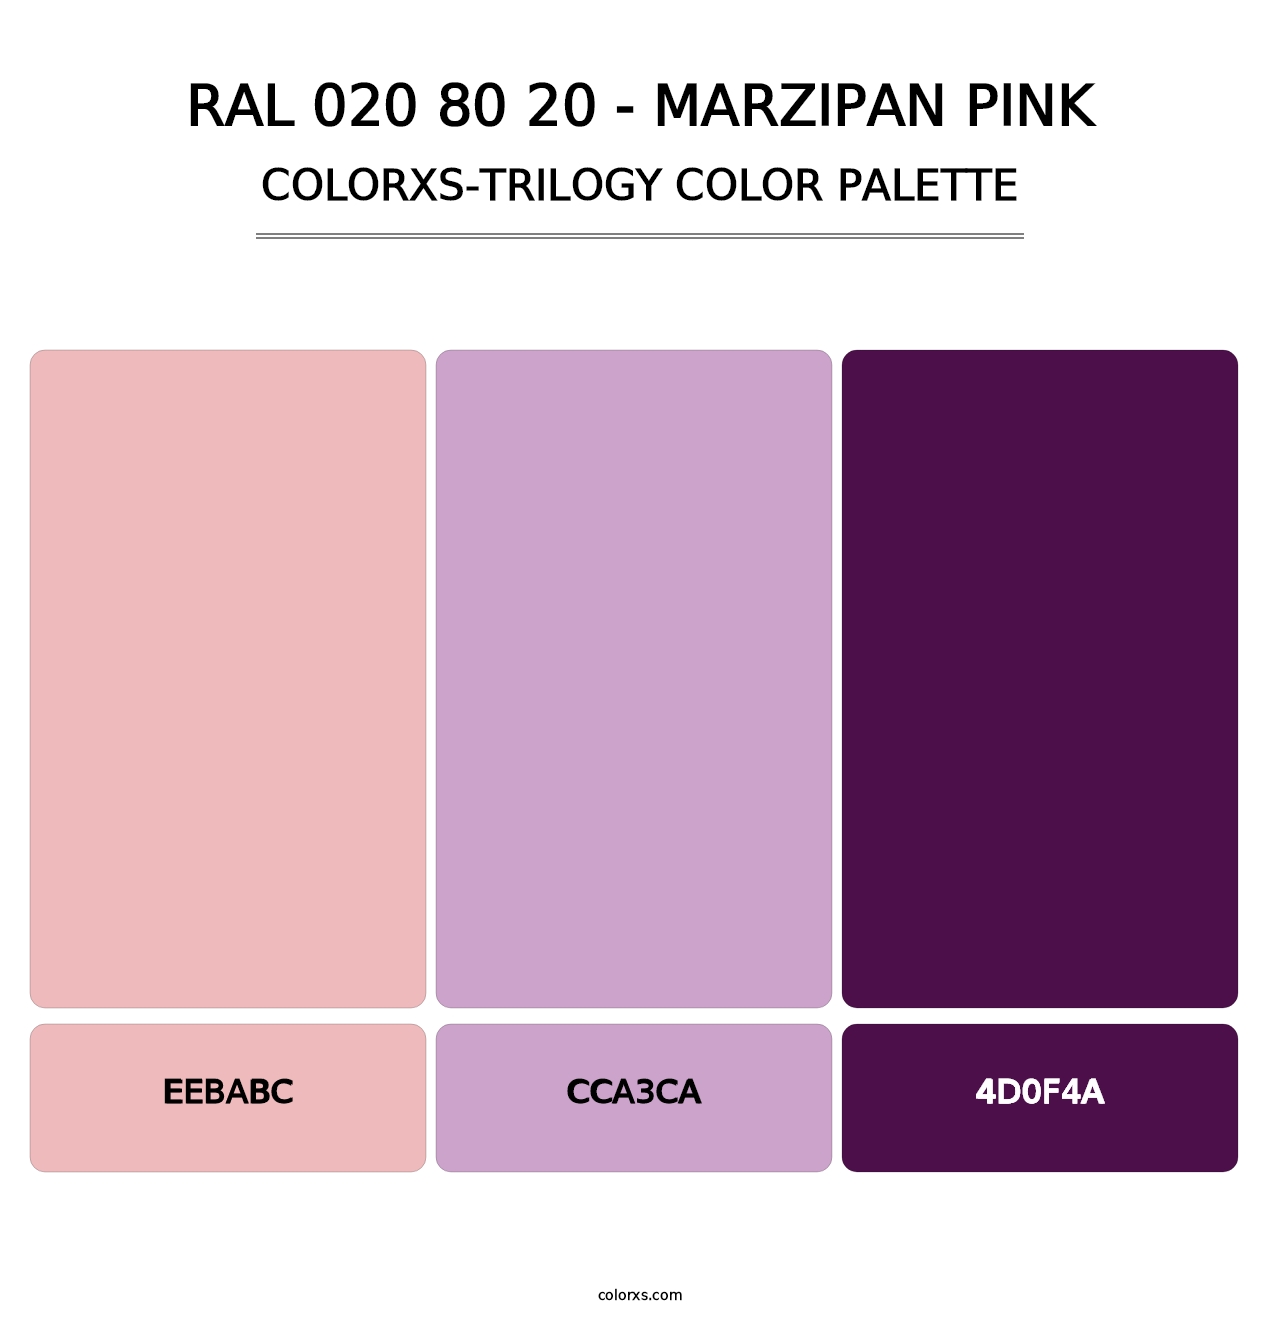 RAL 020 80 20 - Marzipan Pink - Colorxs Trilogy Palette